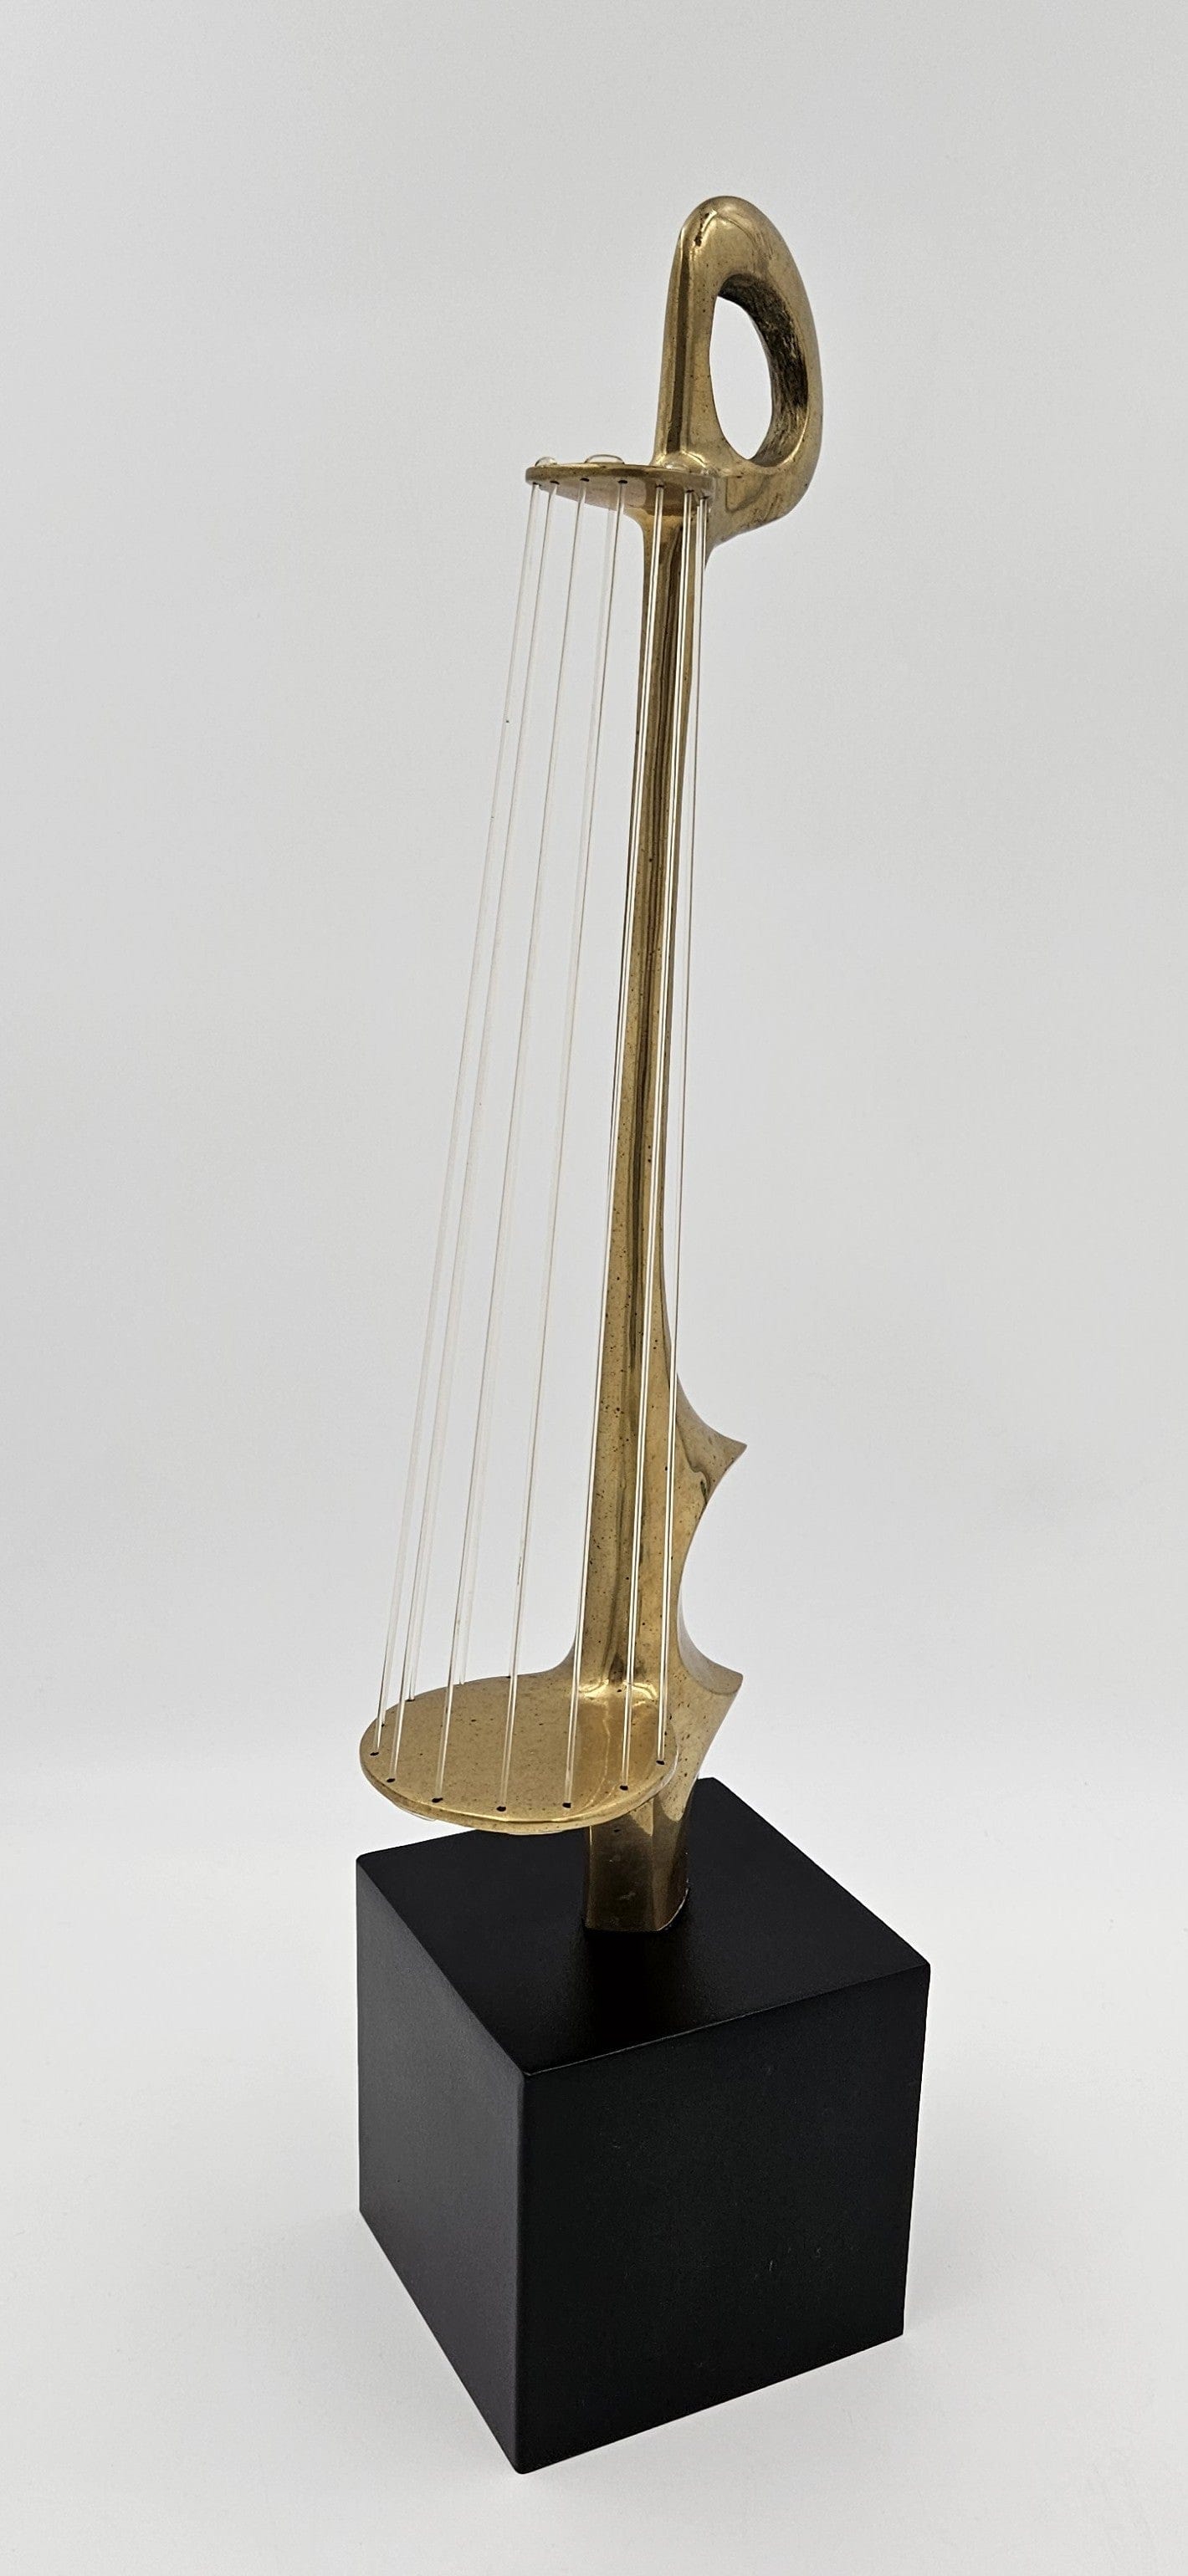 Hattakitkosol Somchal Sculpture Superb H. Somchal Bronze Abstract Modernist String Instrument Sculpture 1970s